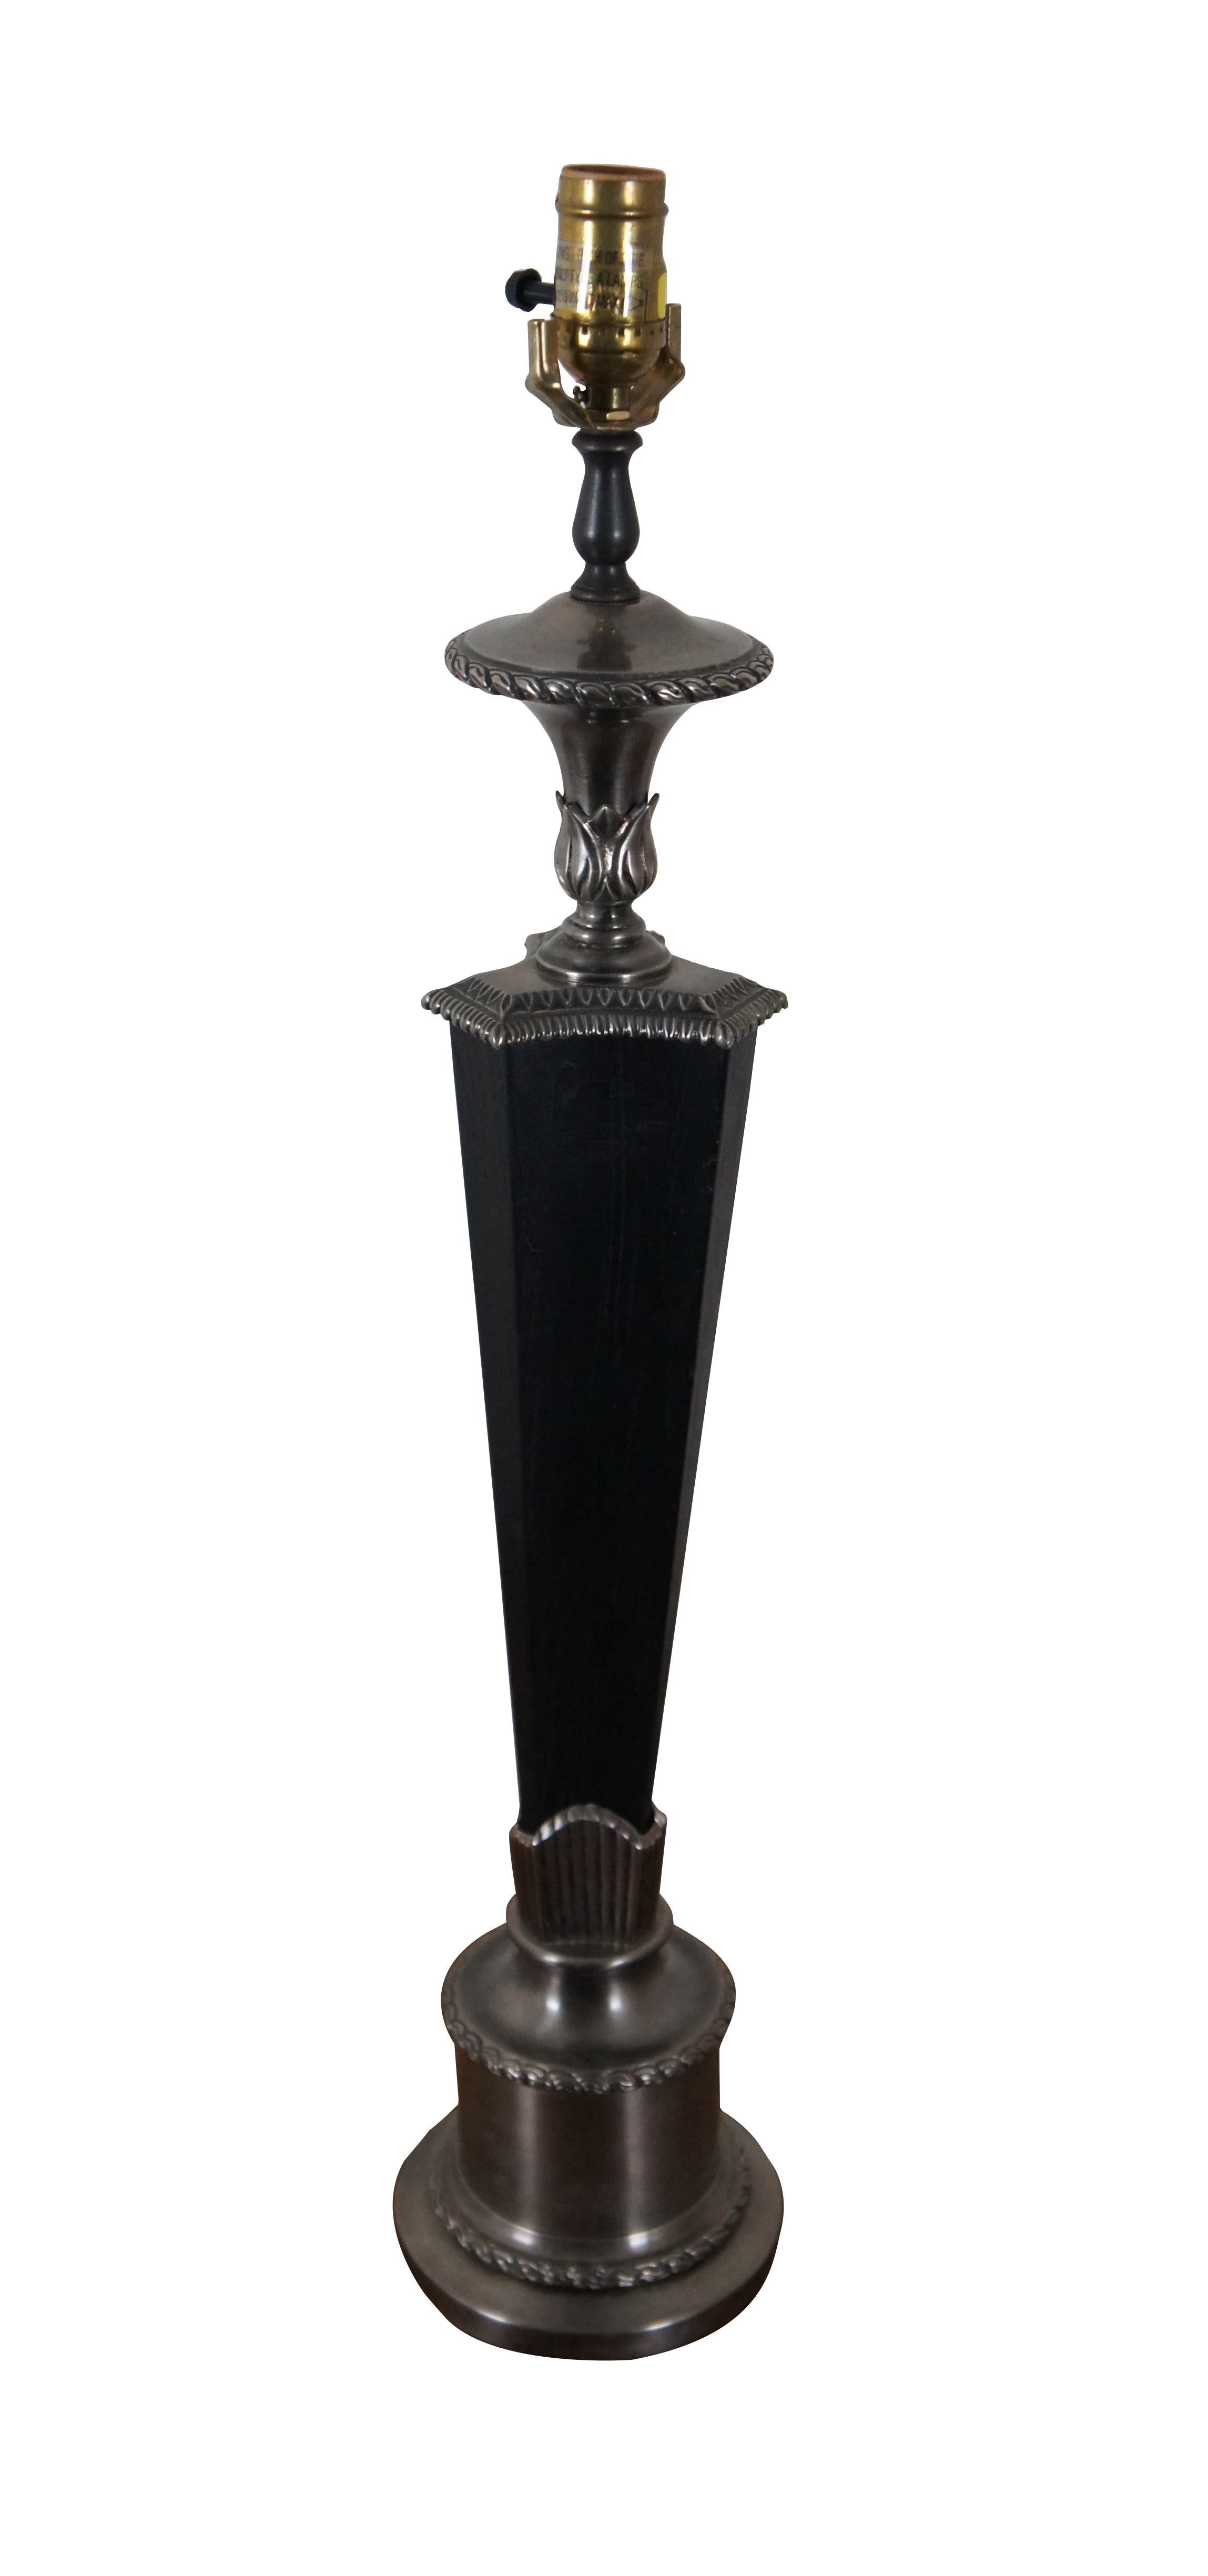 Lampe torchère Chapman en bois ébonisé et métal argenté brossé, avec une base ronde et un corps triangulaire aux côtés concaves. Pas de harpe, pas d'ombre.  Vers 2000.

DIMENSIONS
6